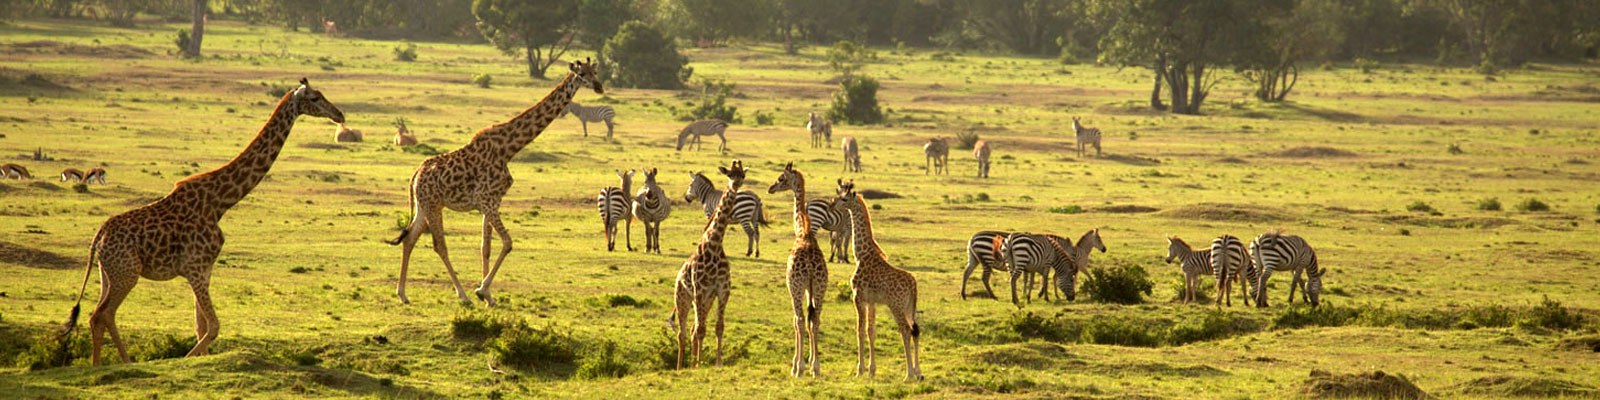 Tanzania Safaris Tours